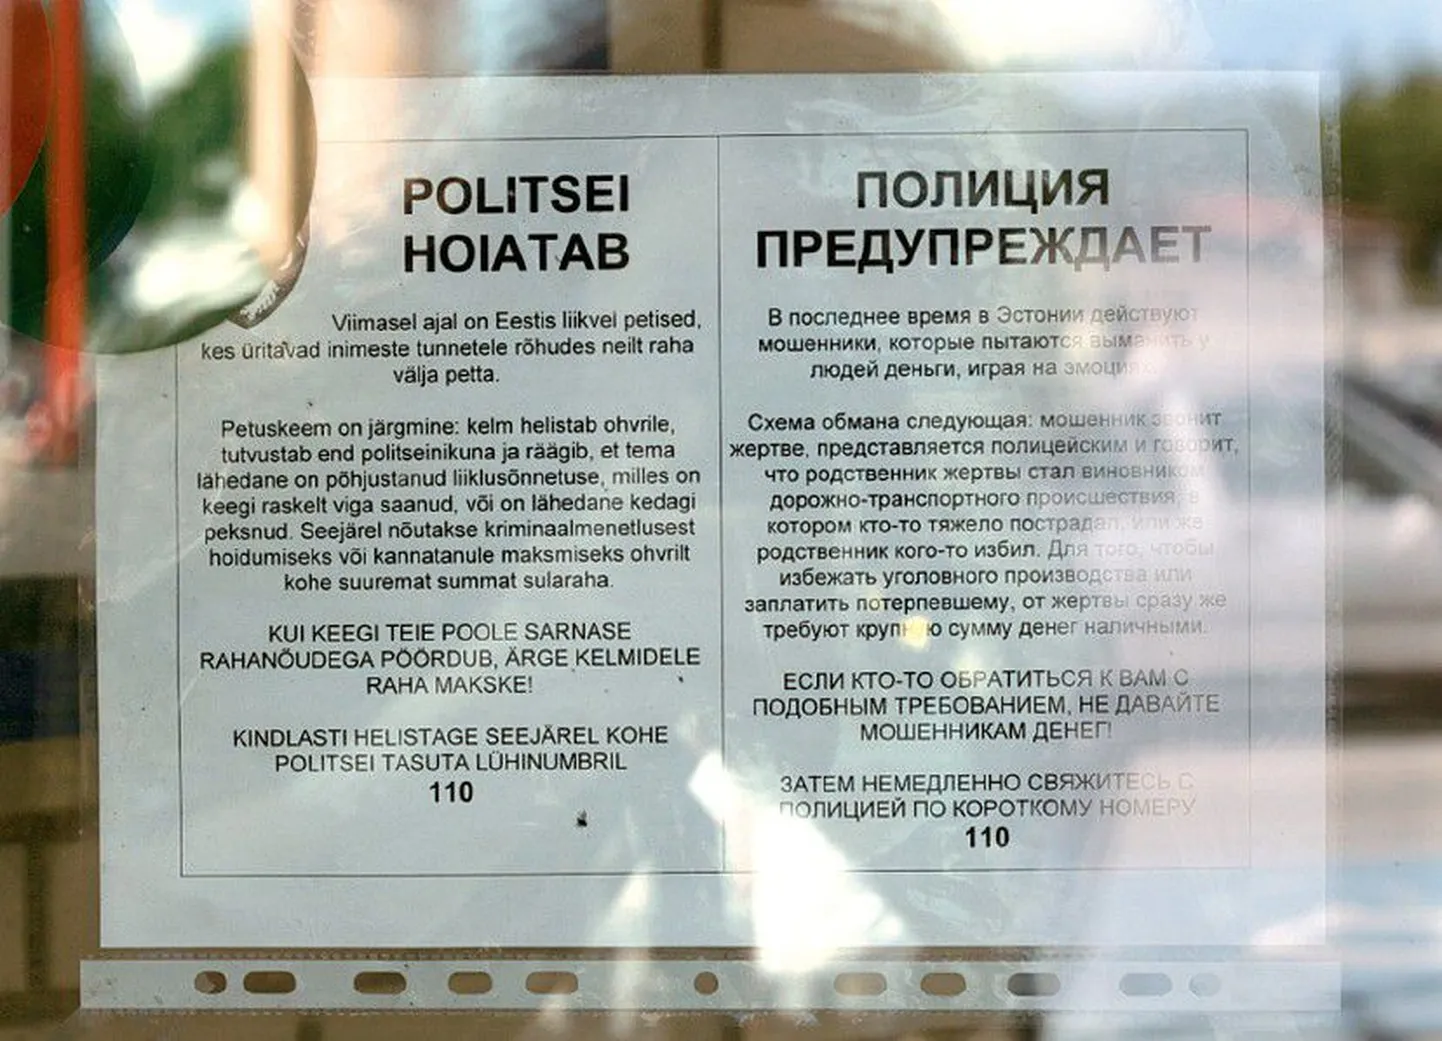 Infot Leedu telefonikelmidest jagavad omal algatusel isegi firmad – Haapsalu Säästumarket sai korralduse inimesi hoiatav silt uksele kleepida firma peakontorist Tallinnast.